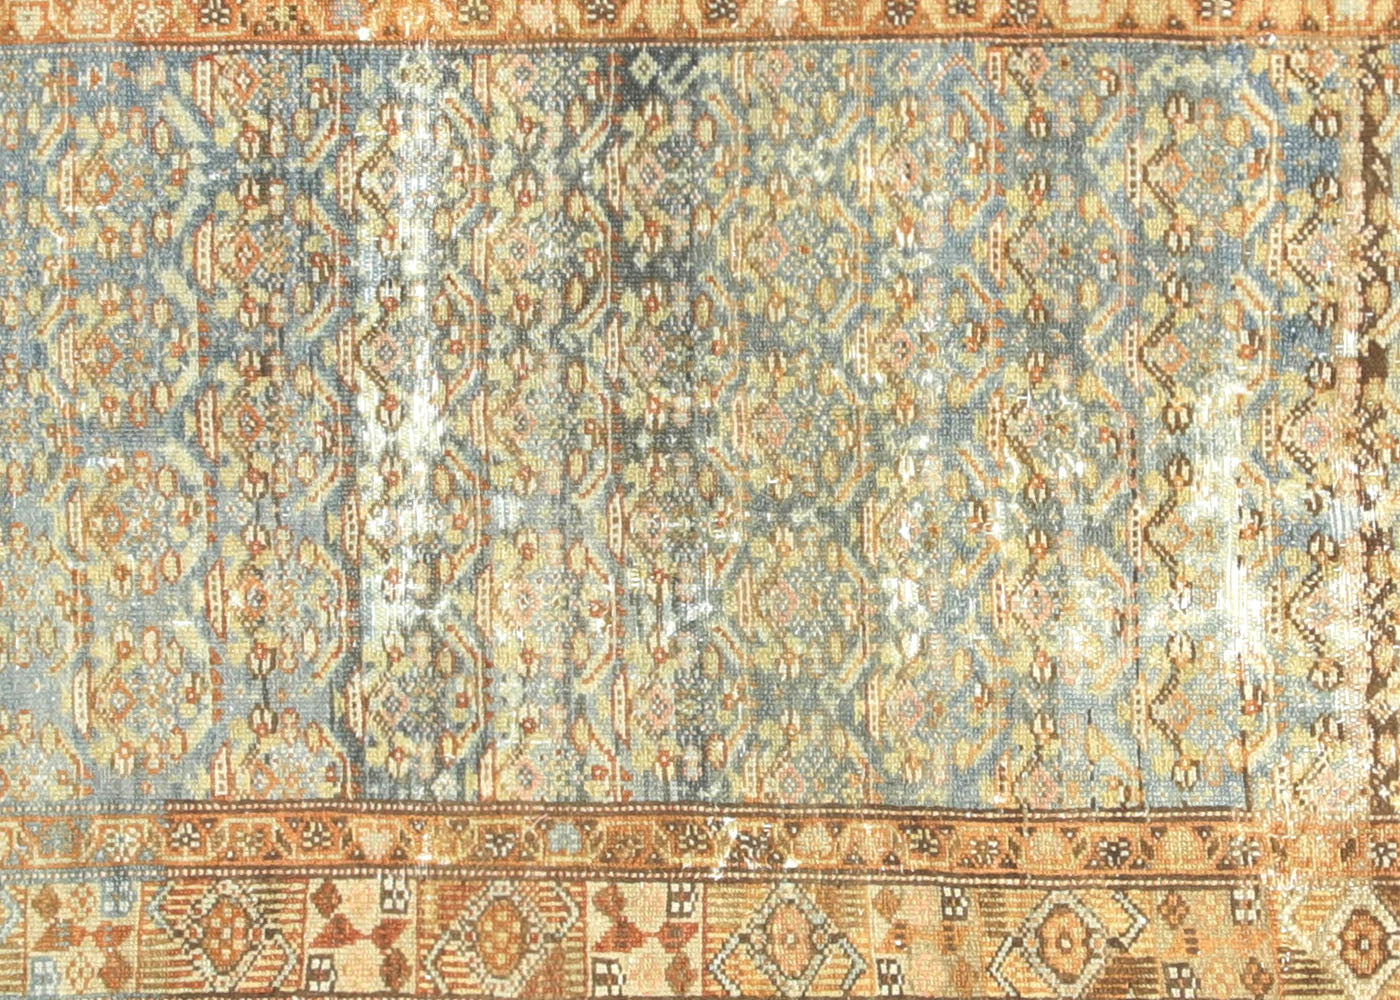 Antique Persian Melayer Runner - 3' x 13'3"